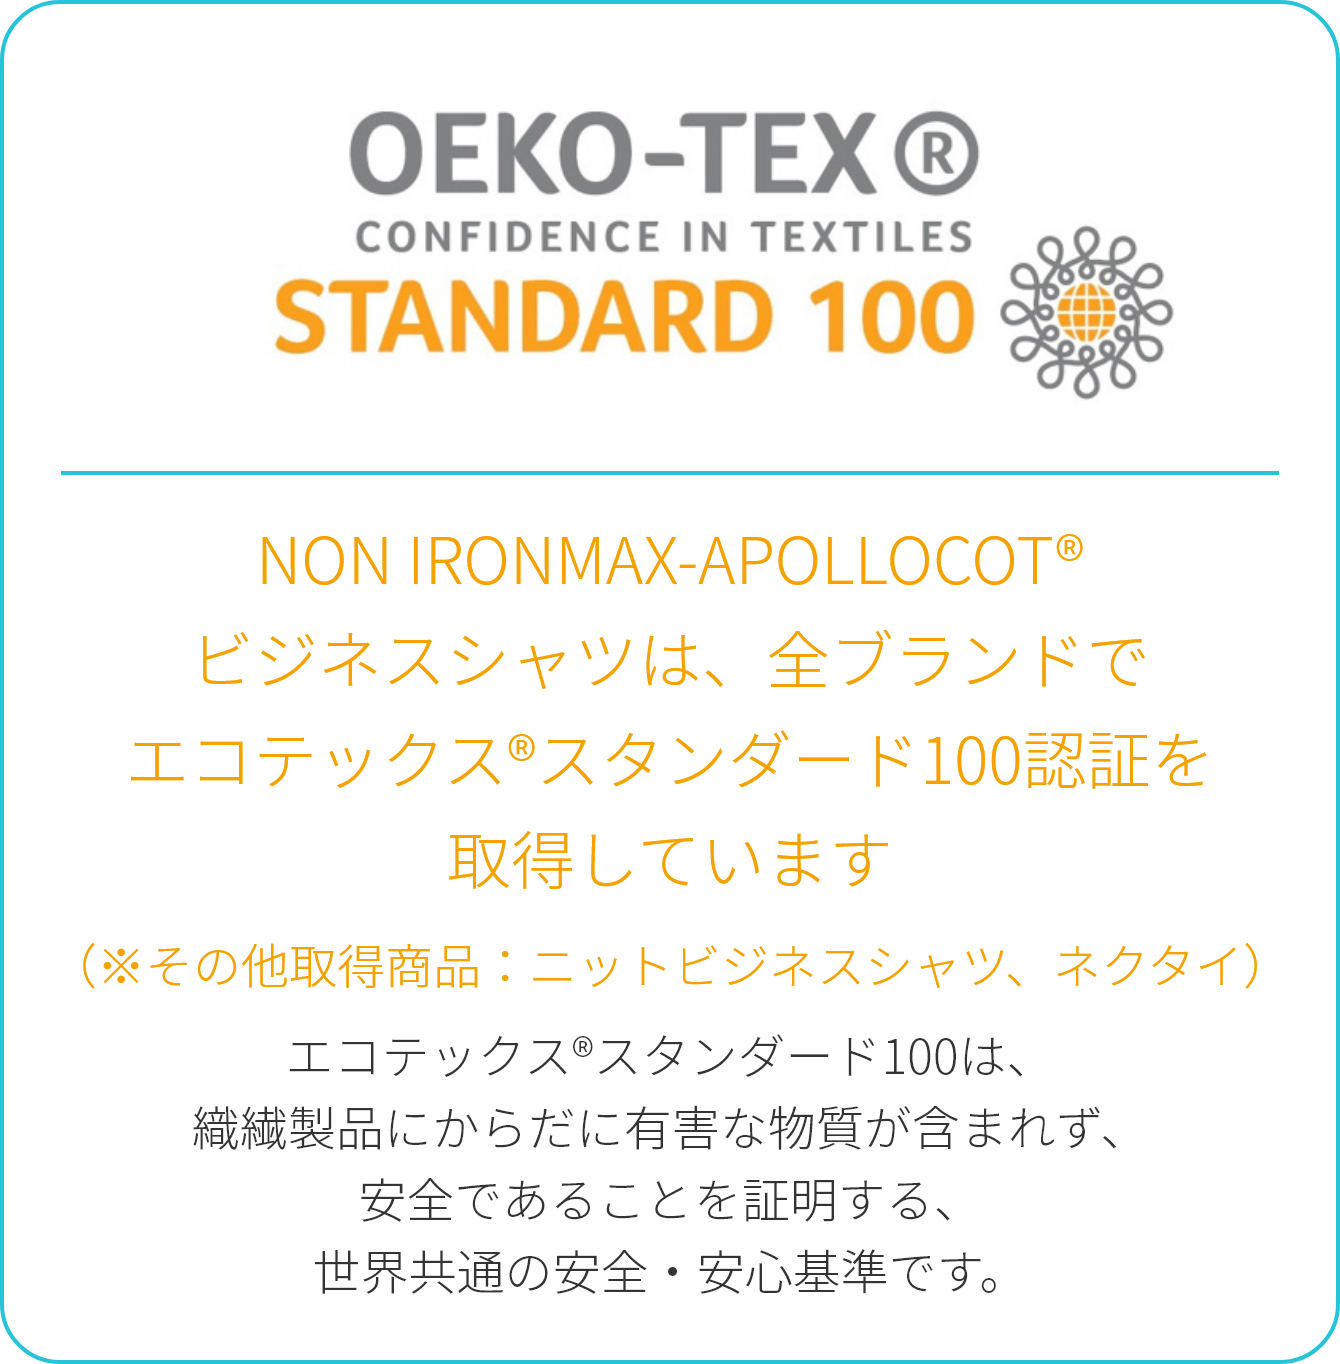 NON IRONMAX-APOLLOCOT®ビジネスシャツは、全ブランドでエコテックス®スタンダード100認証を取得しています（※その他取得商品：ニットビジネスシャツ、ネクタイ）エコテックス®スタンダード100は、織繊製品にからだに有害な物質が含まれず、安全であることを証明する、世界共通の安全・安心基準です。